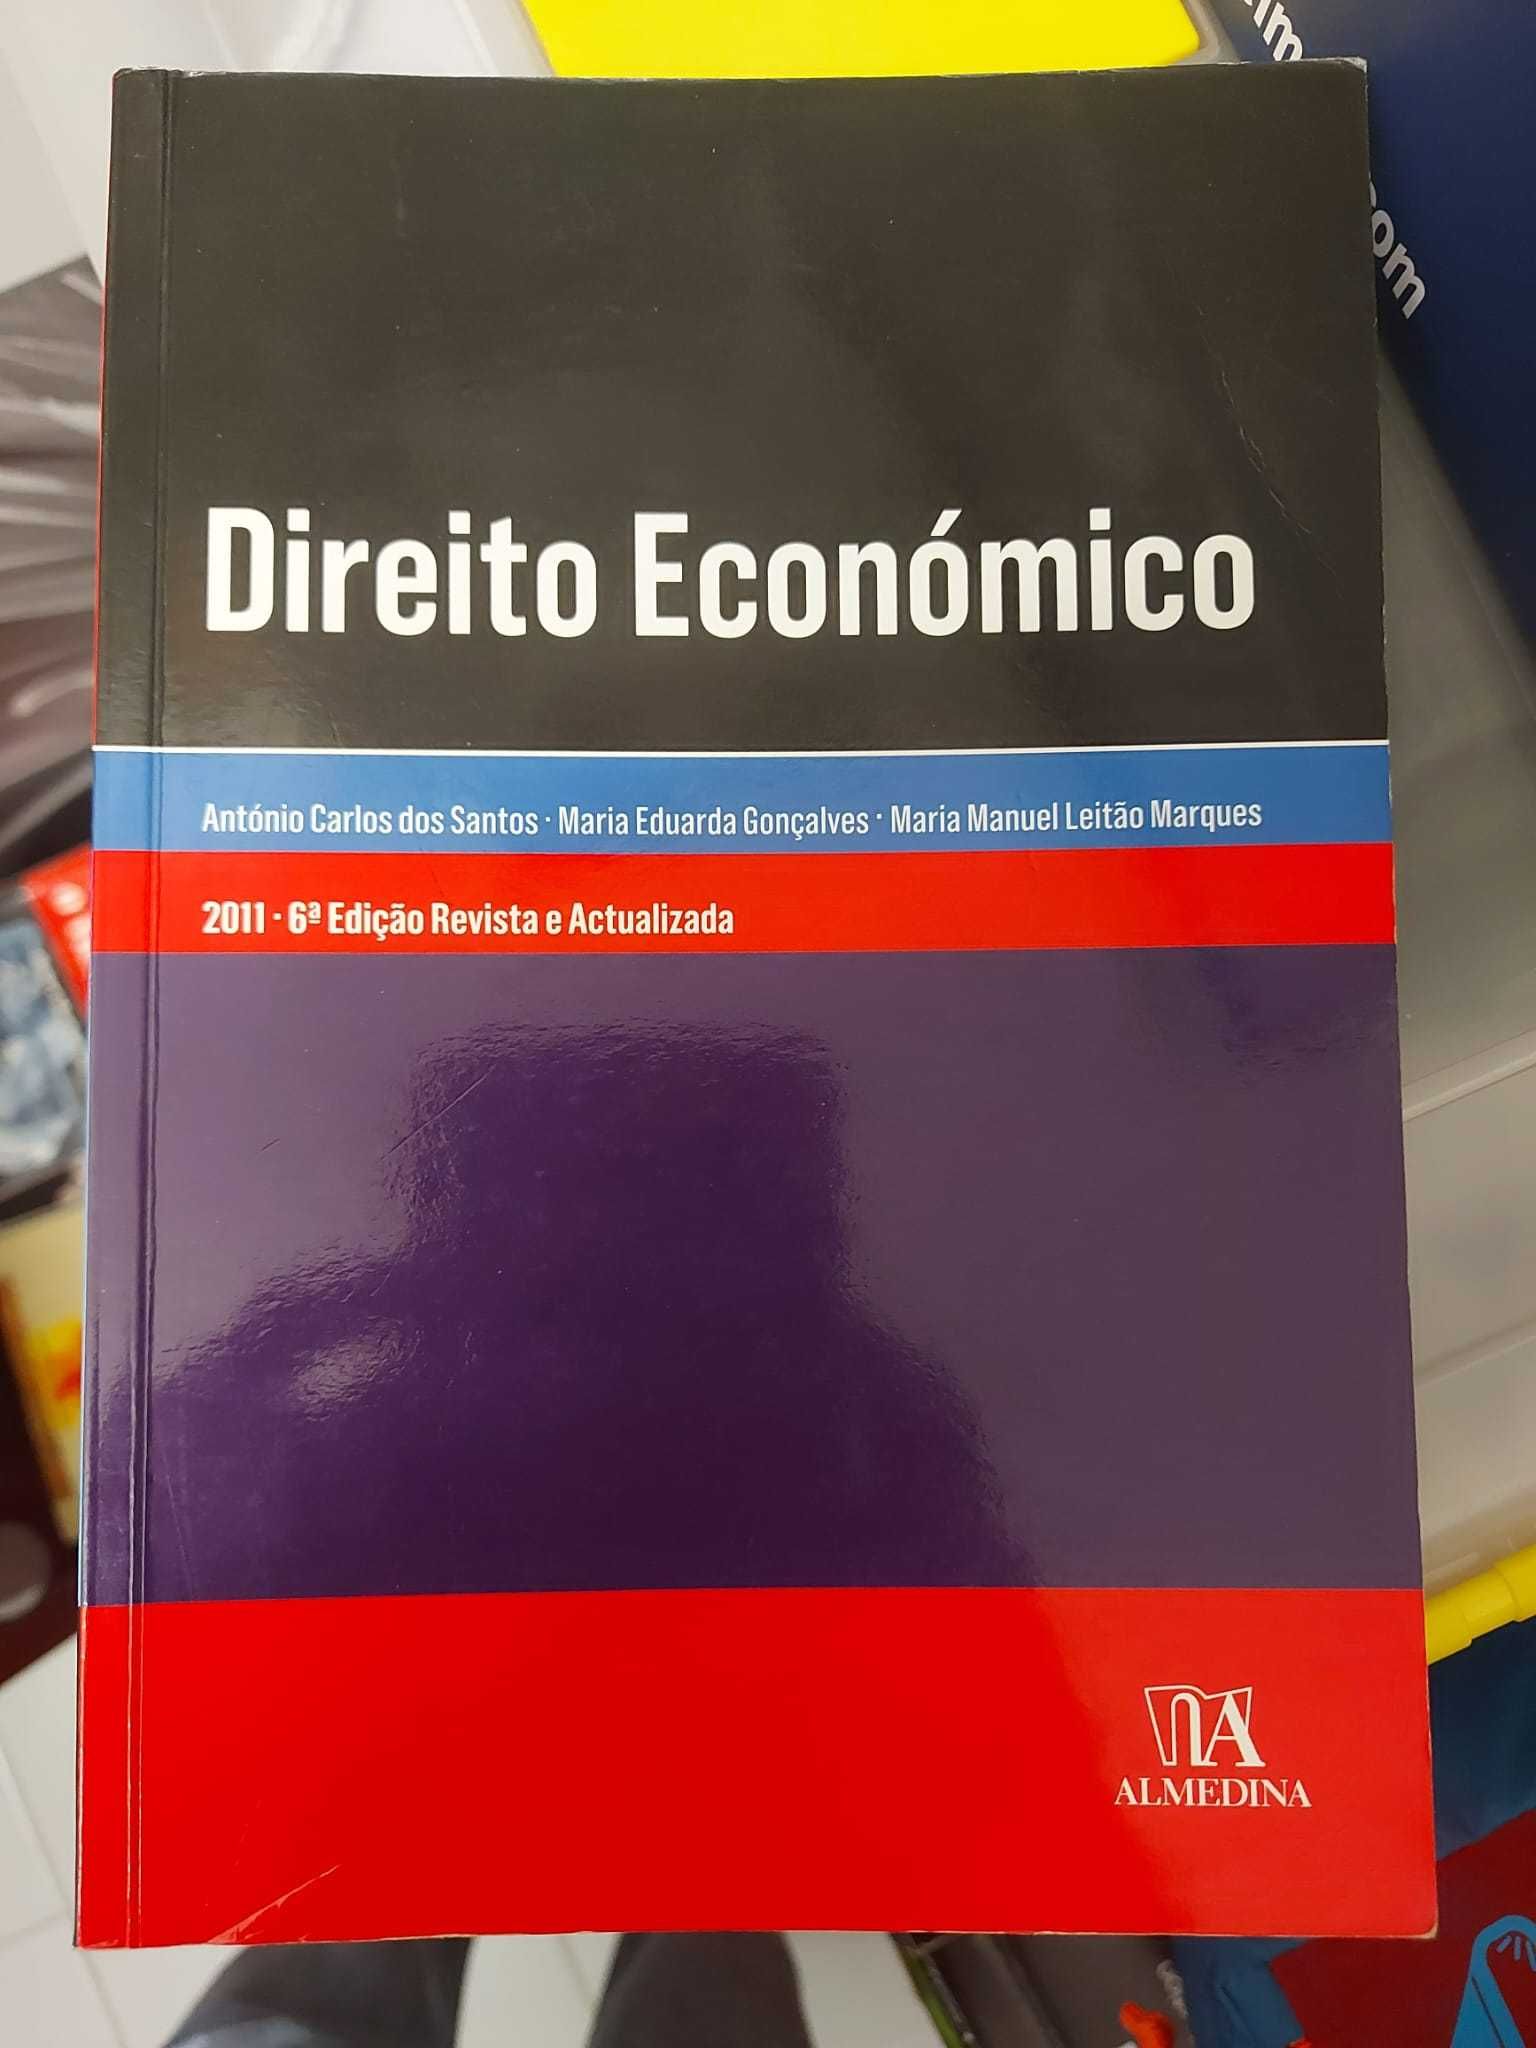 Direito Económico, AA. VV.